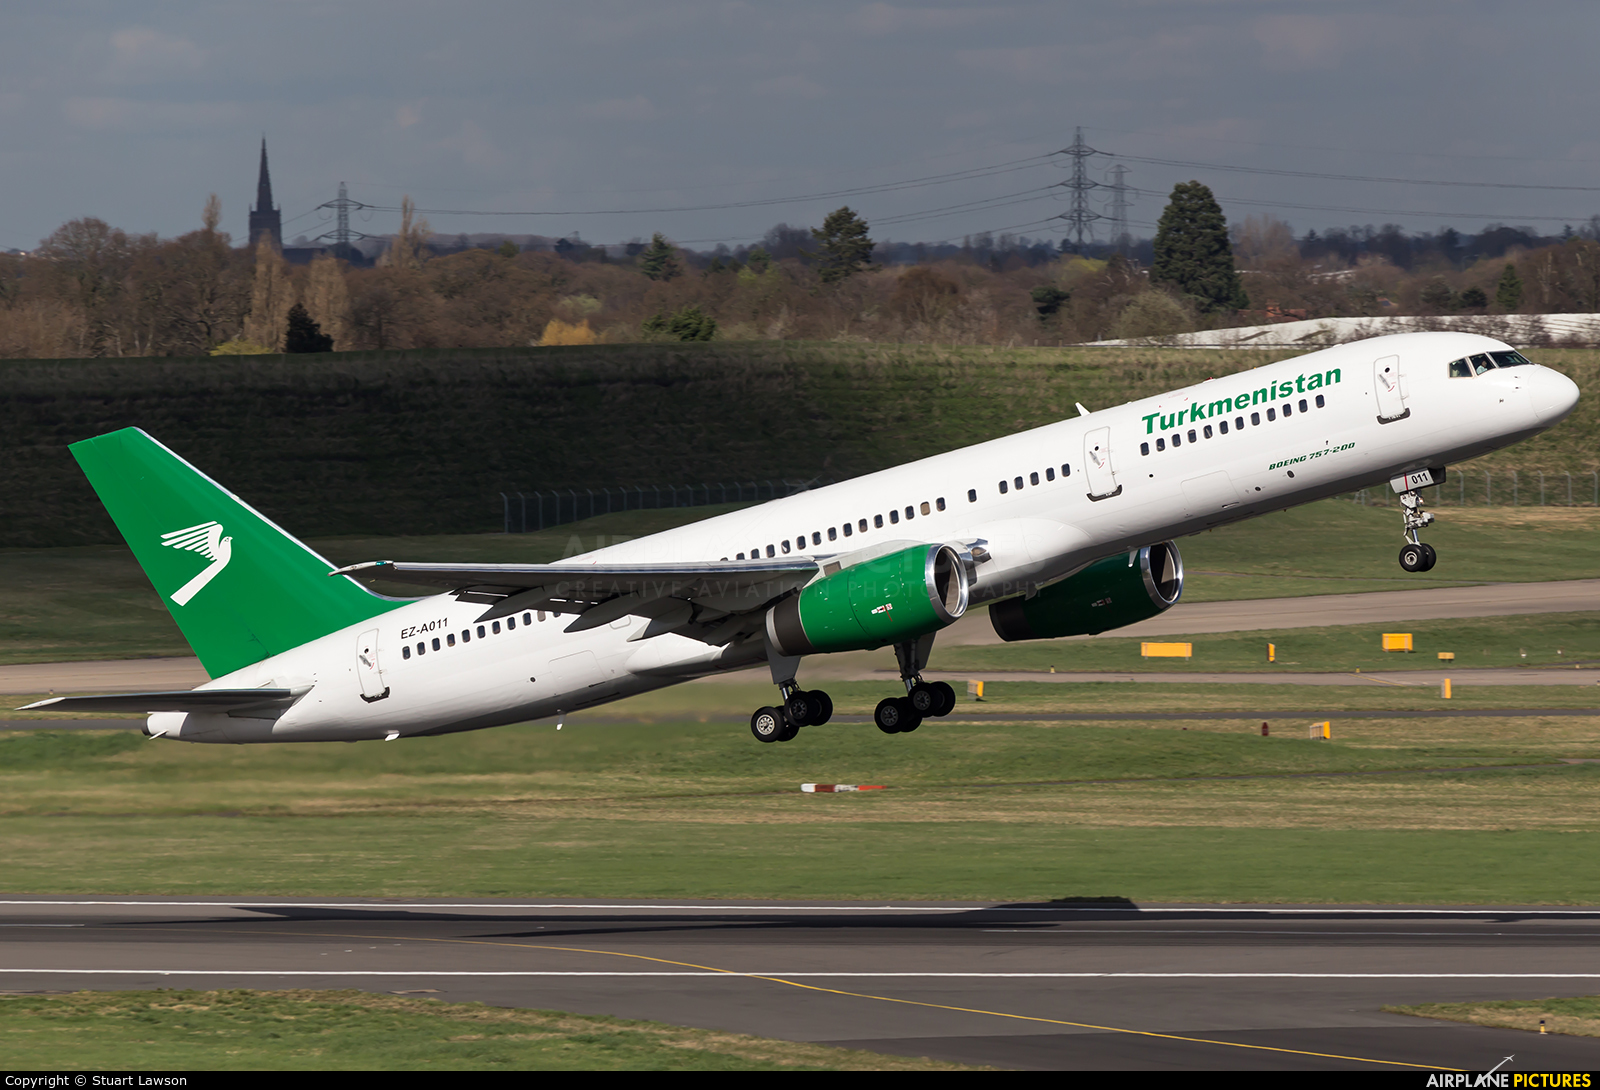 Turkmenistan Airlines EZ-A011 aircraft at Birmingham